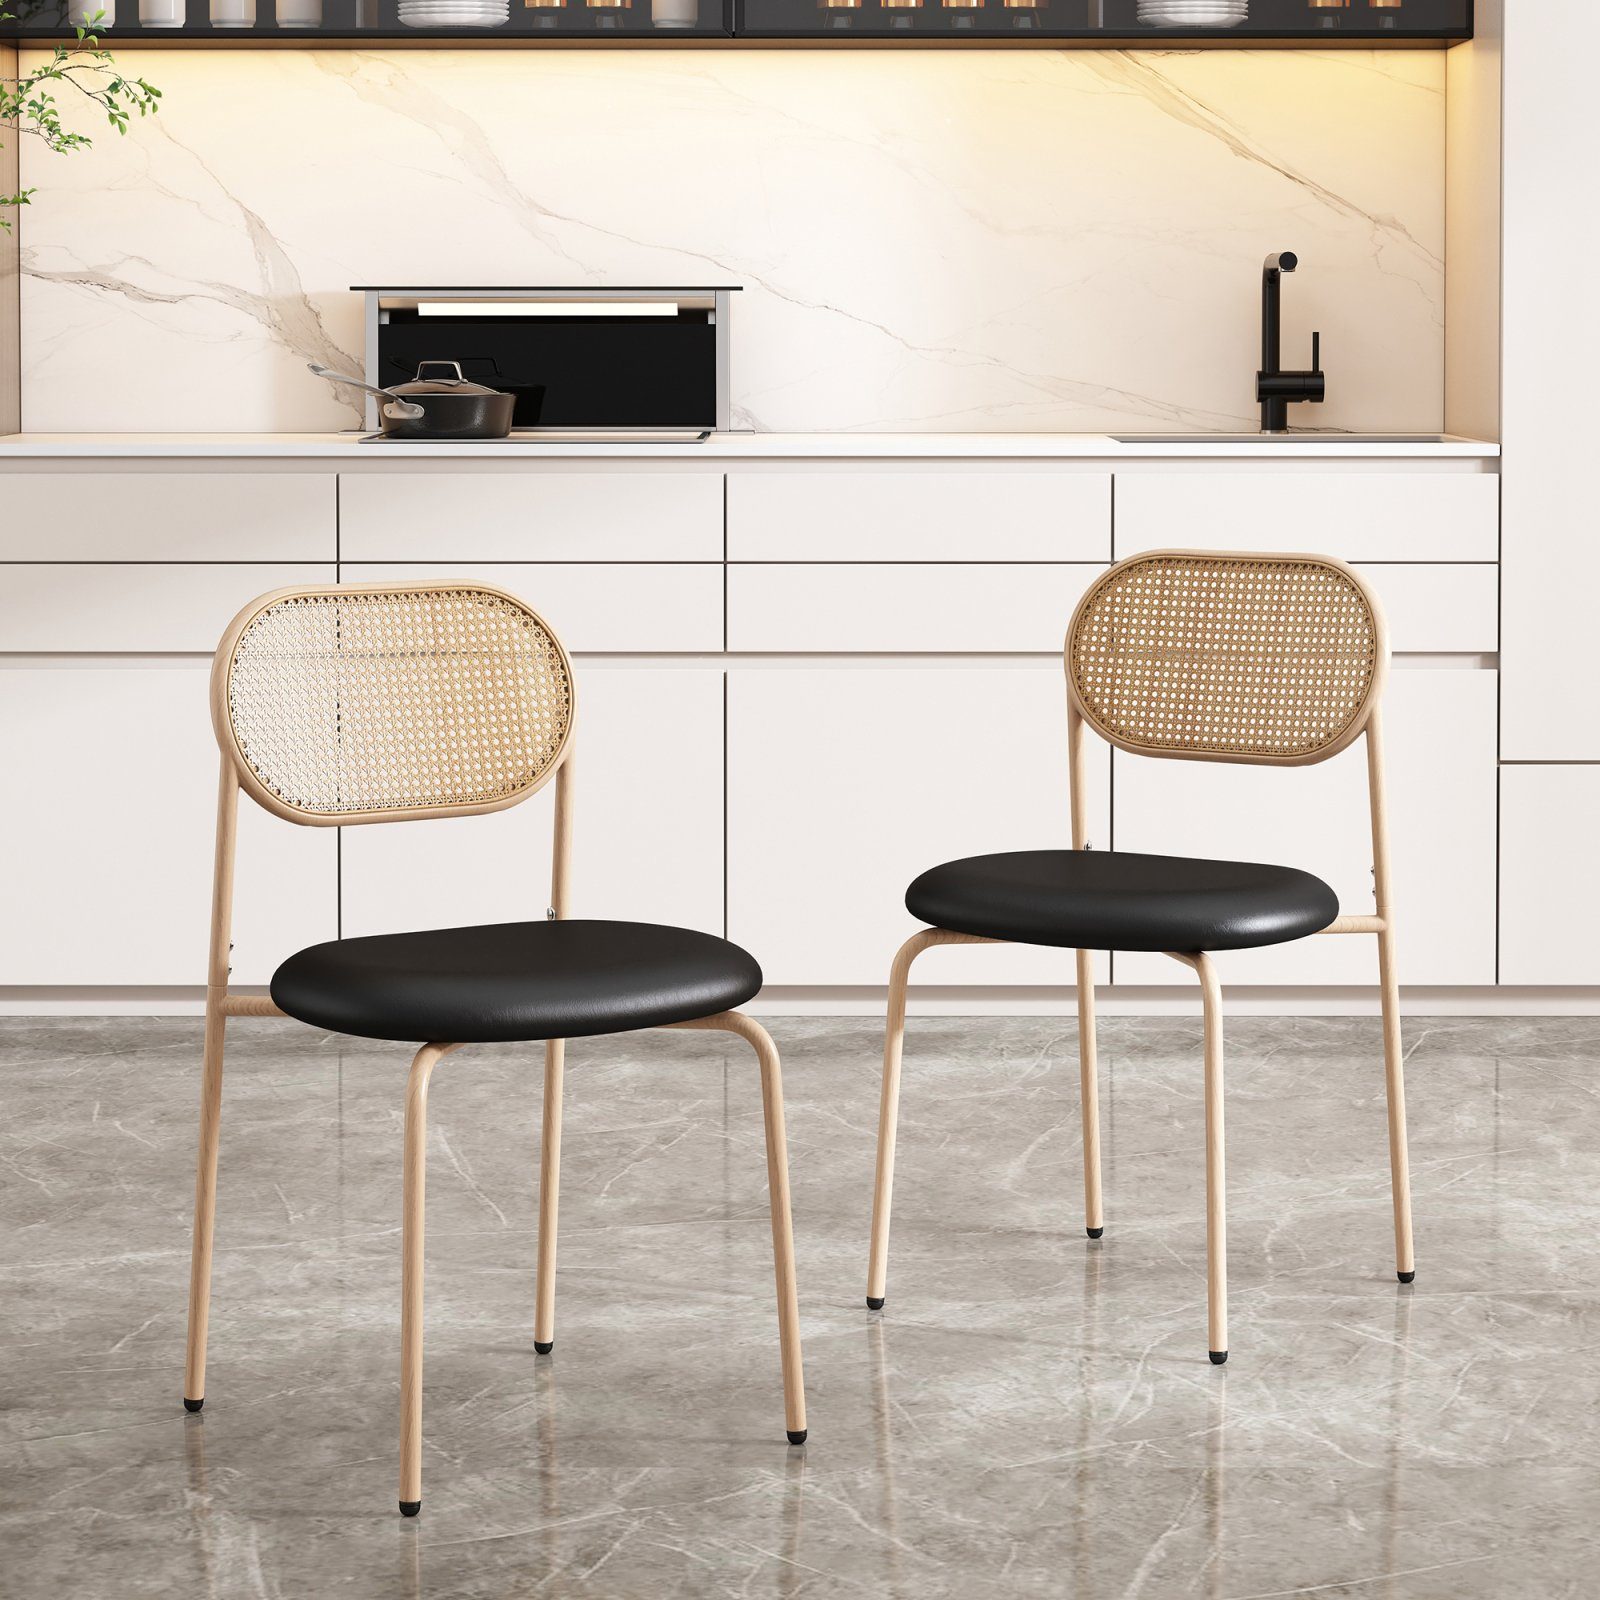 SEEZSSA Esszimmerstuhl 2/4/6er Set Moderner Rattan-Freizeitstuhl mit Stützbeinen aus Metall, 2 schwarze Stühle mit ovalen Rückenlehnen